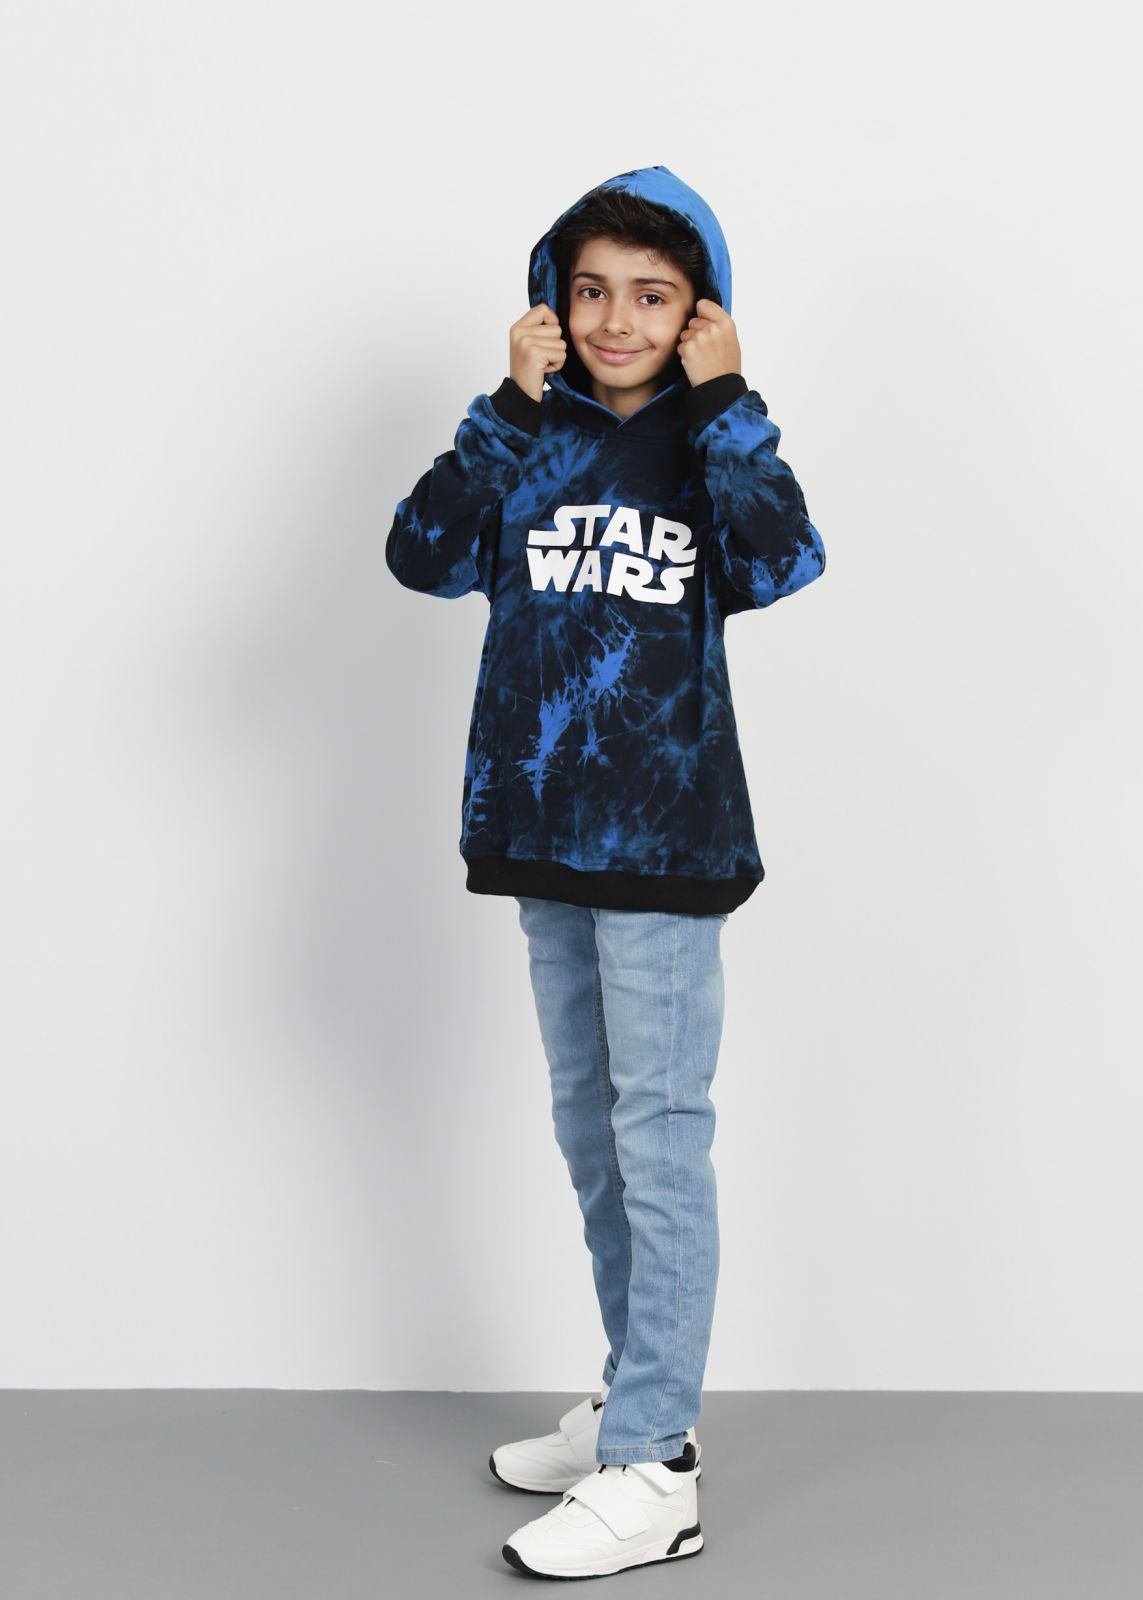 Hoodie Boy “Star Wars” Tie-Dye Printed Kids